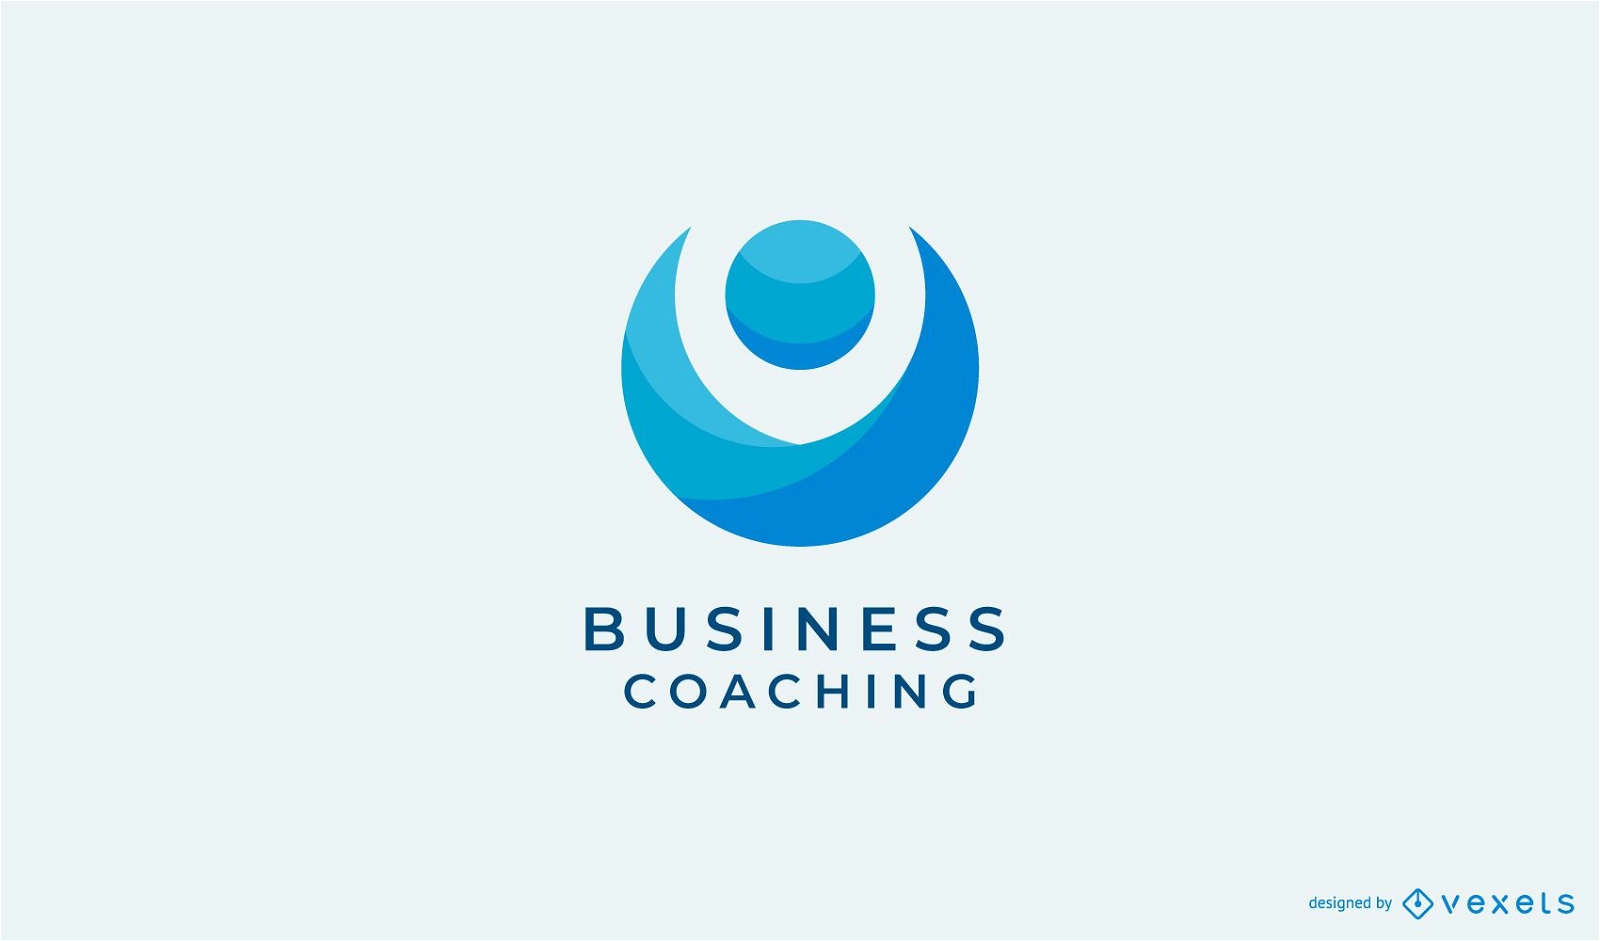 Dise?o de logotipo abstracto de coaching empresarial